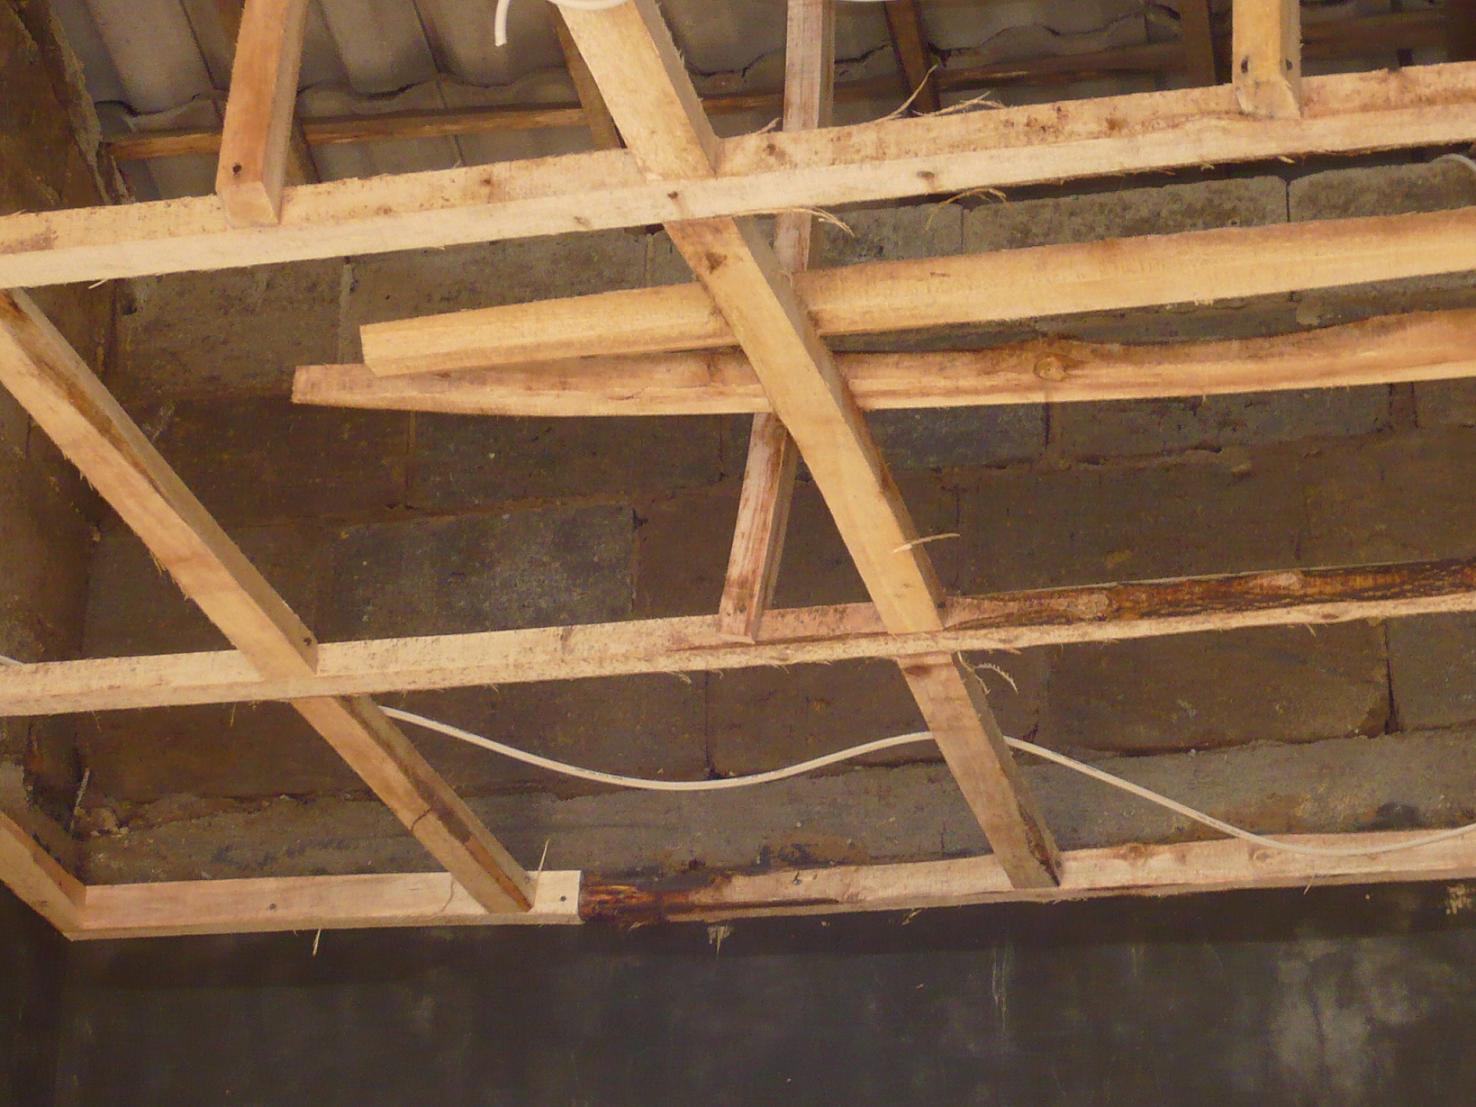  kayu  to dinding atap Info Perumahan Taman Anyelir s